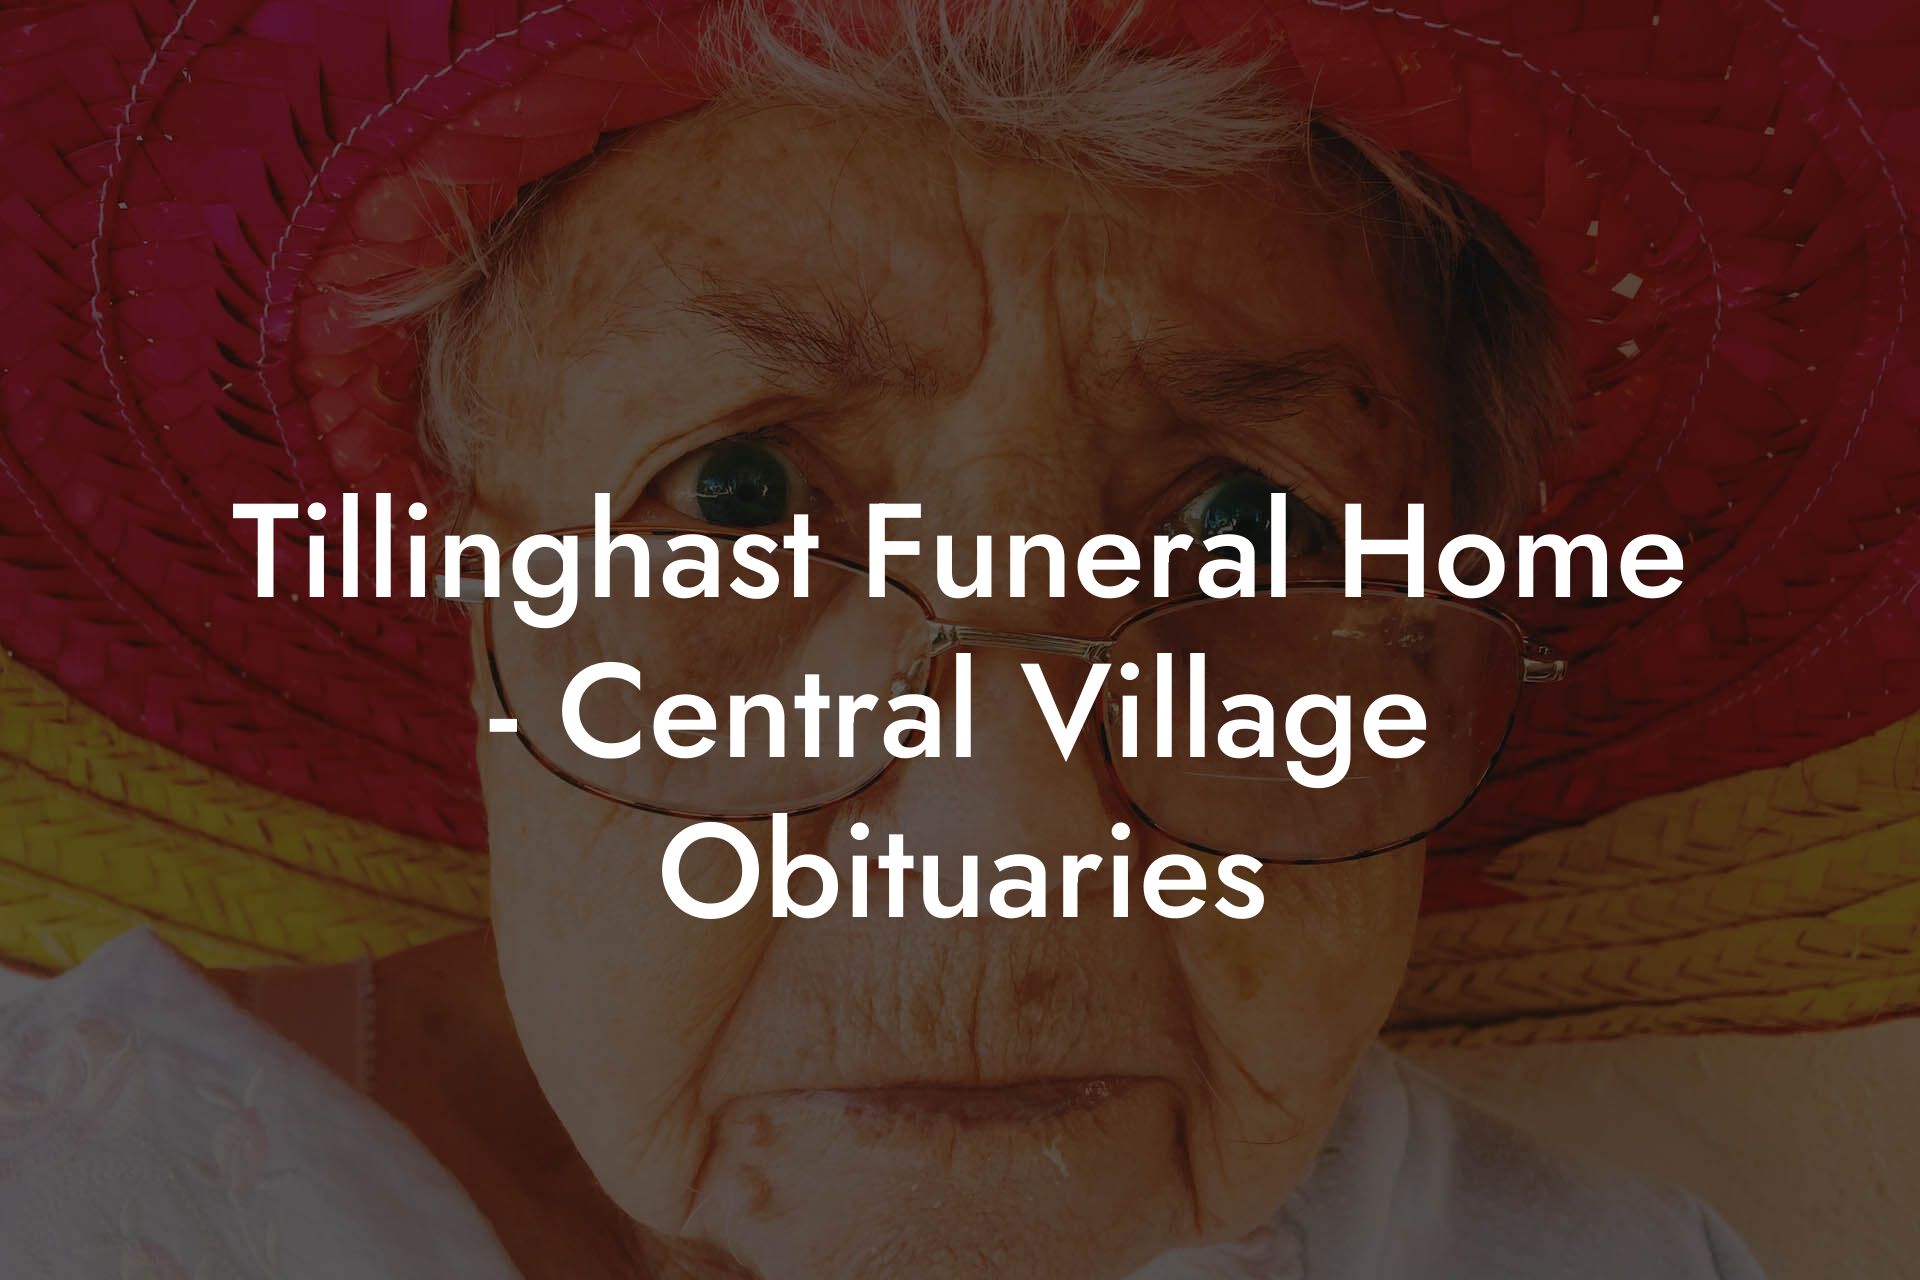 Tillinghast Funeral Home - Central Village Obituaries